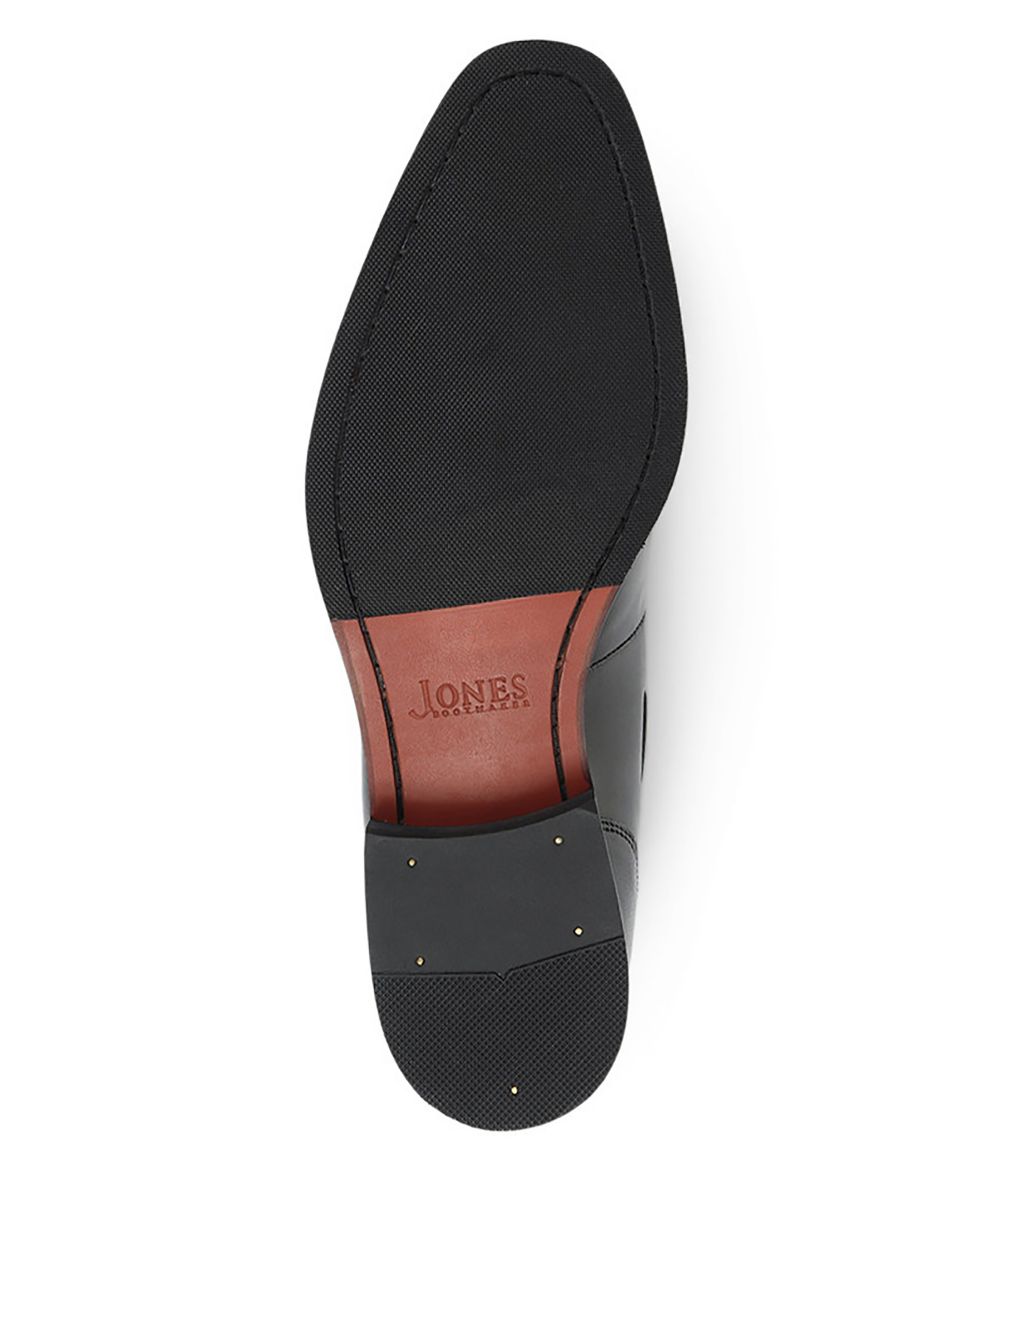 Leather Tassel Slip-On Loafers image 5